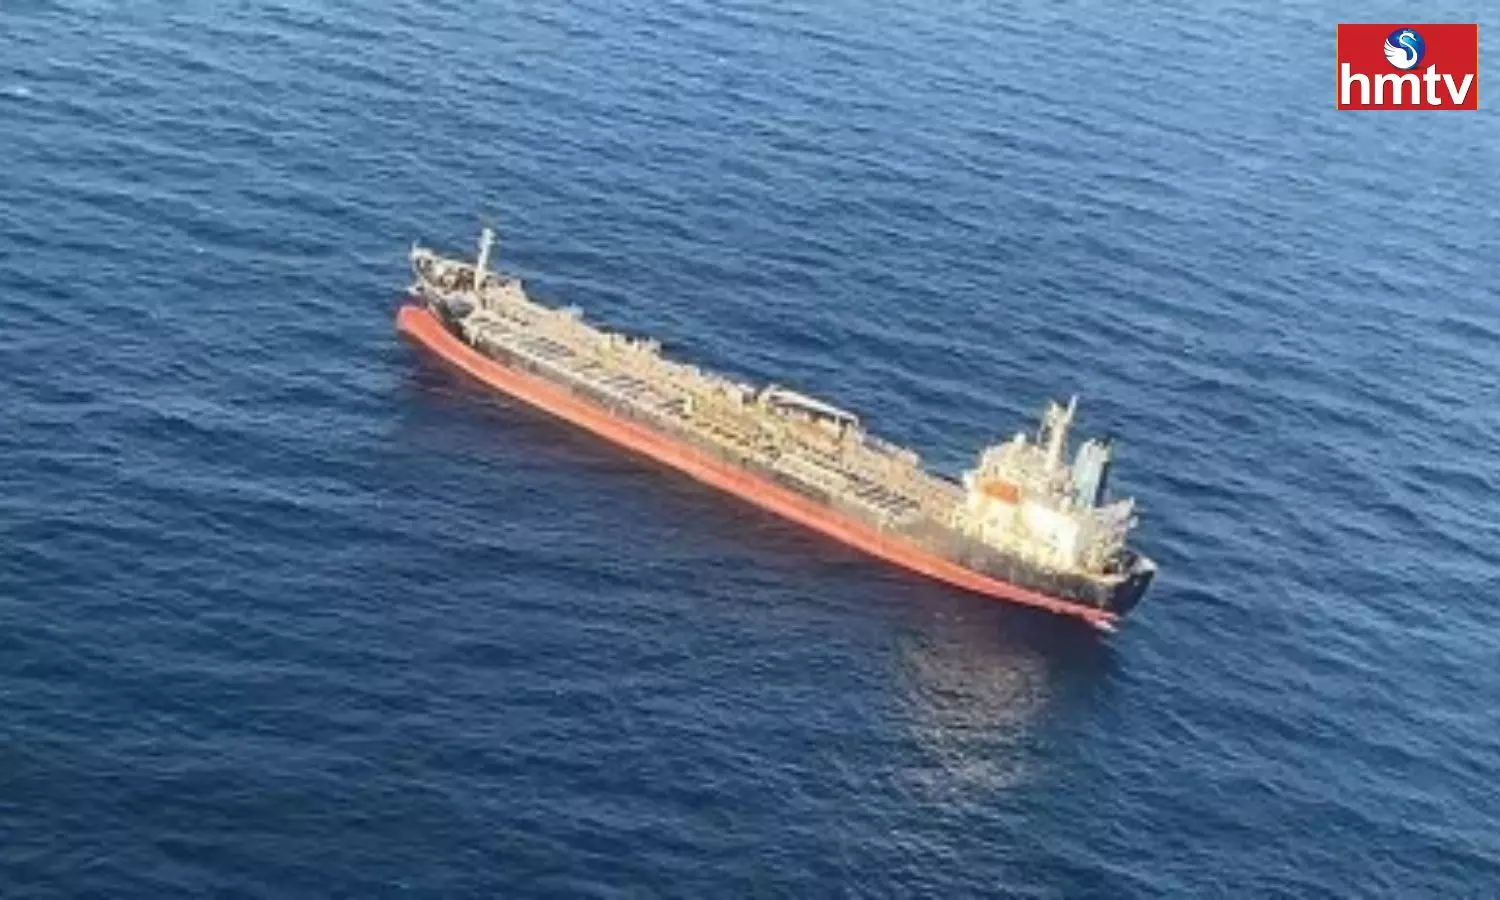 Drone Strike Hits Ship In Arabian Ocean Near Gujarat Coast